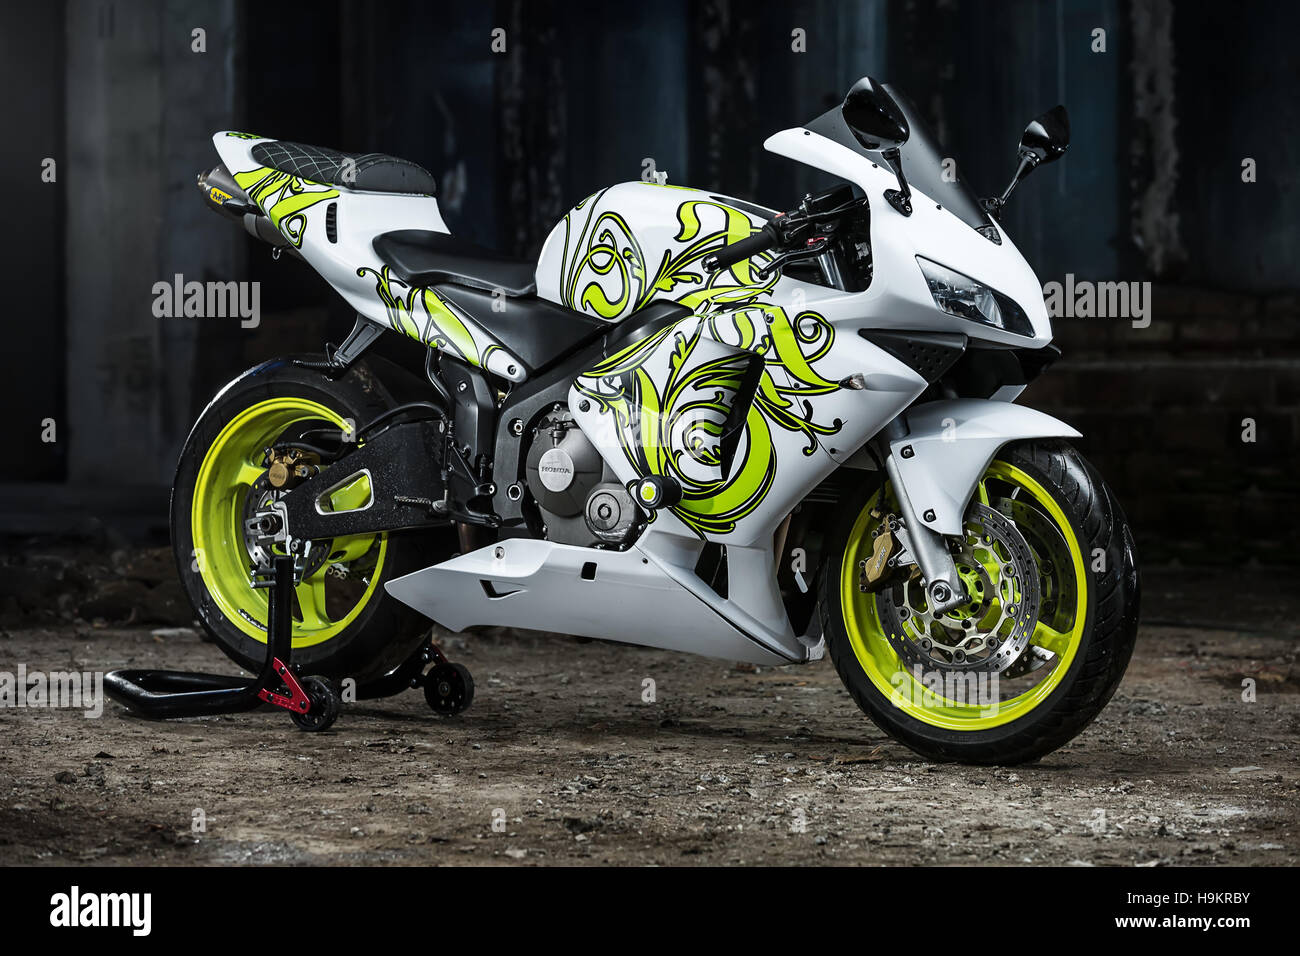 Honda Sport Motorrad tuning Stockfotografie - Alamy